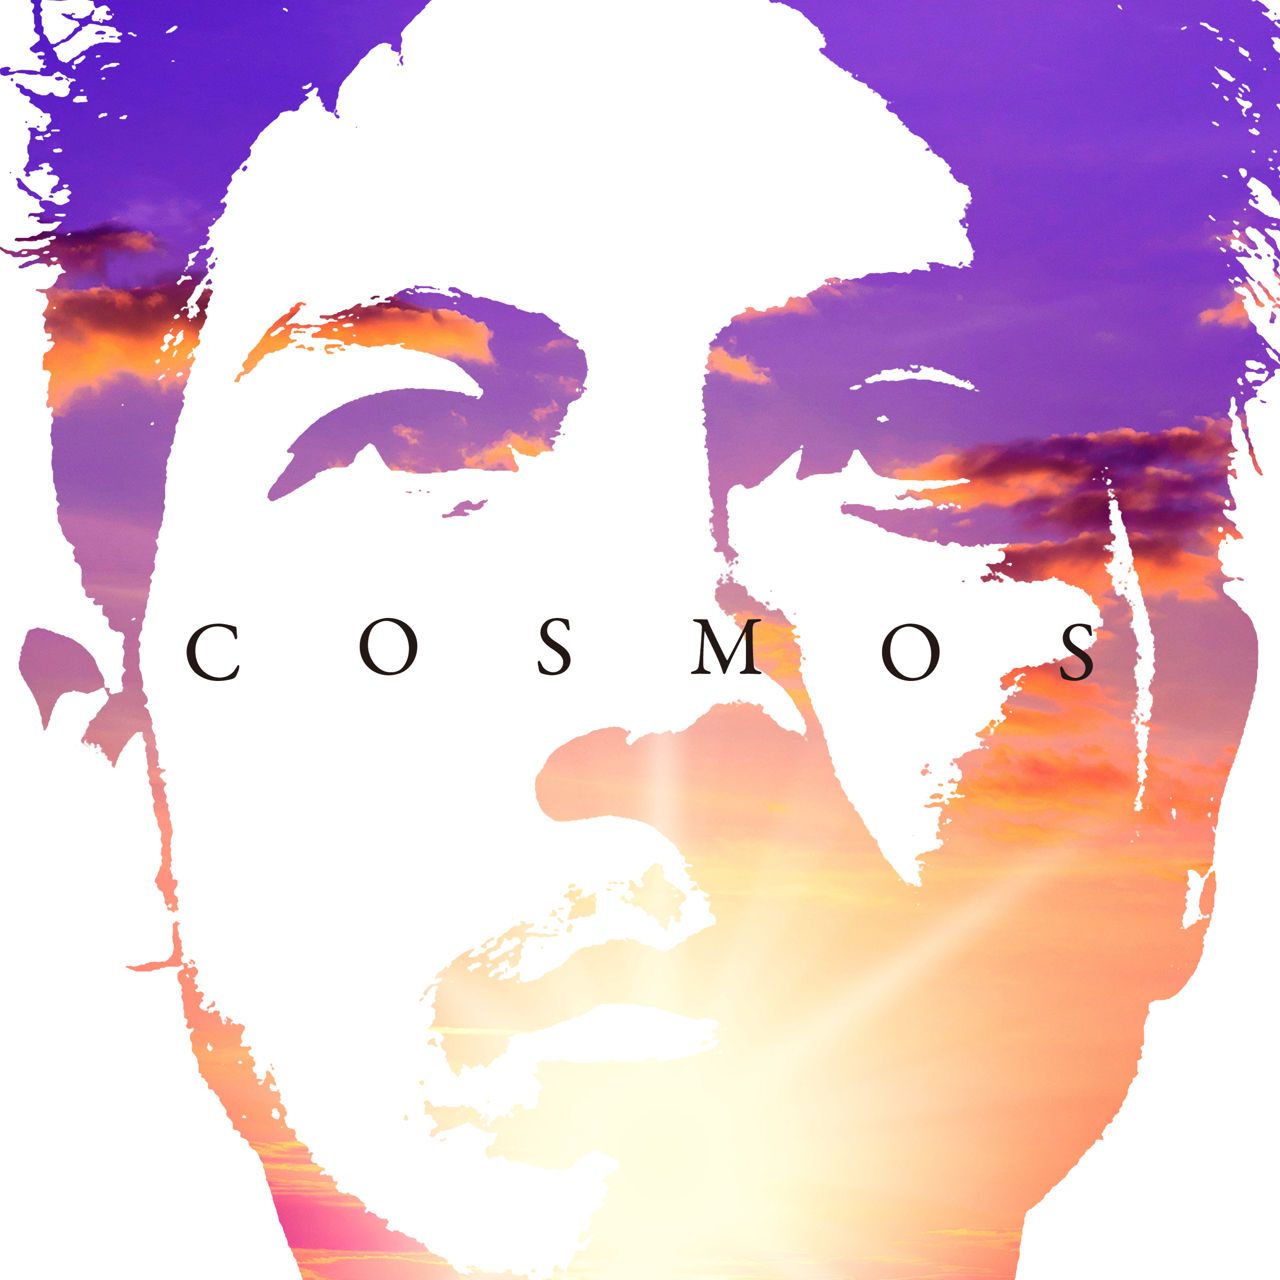 竹内朋康 & Friends / Tour "Cosmos" 2015